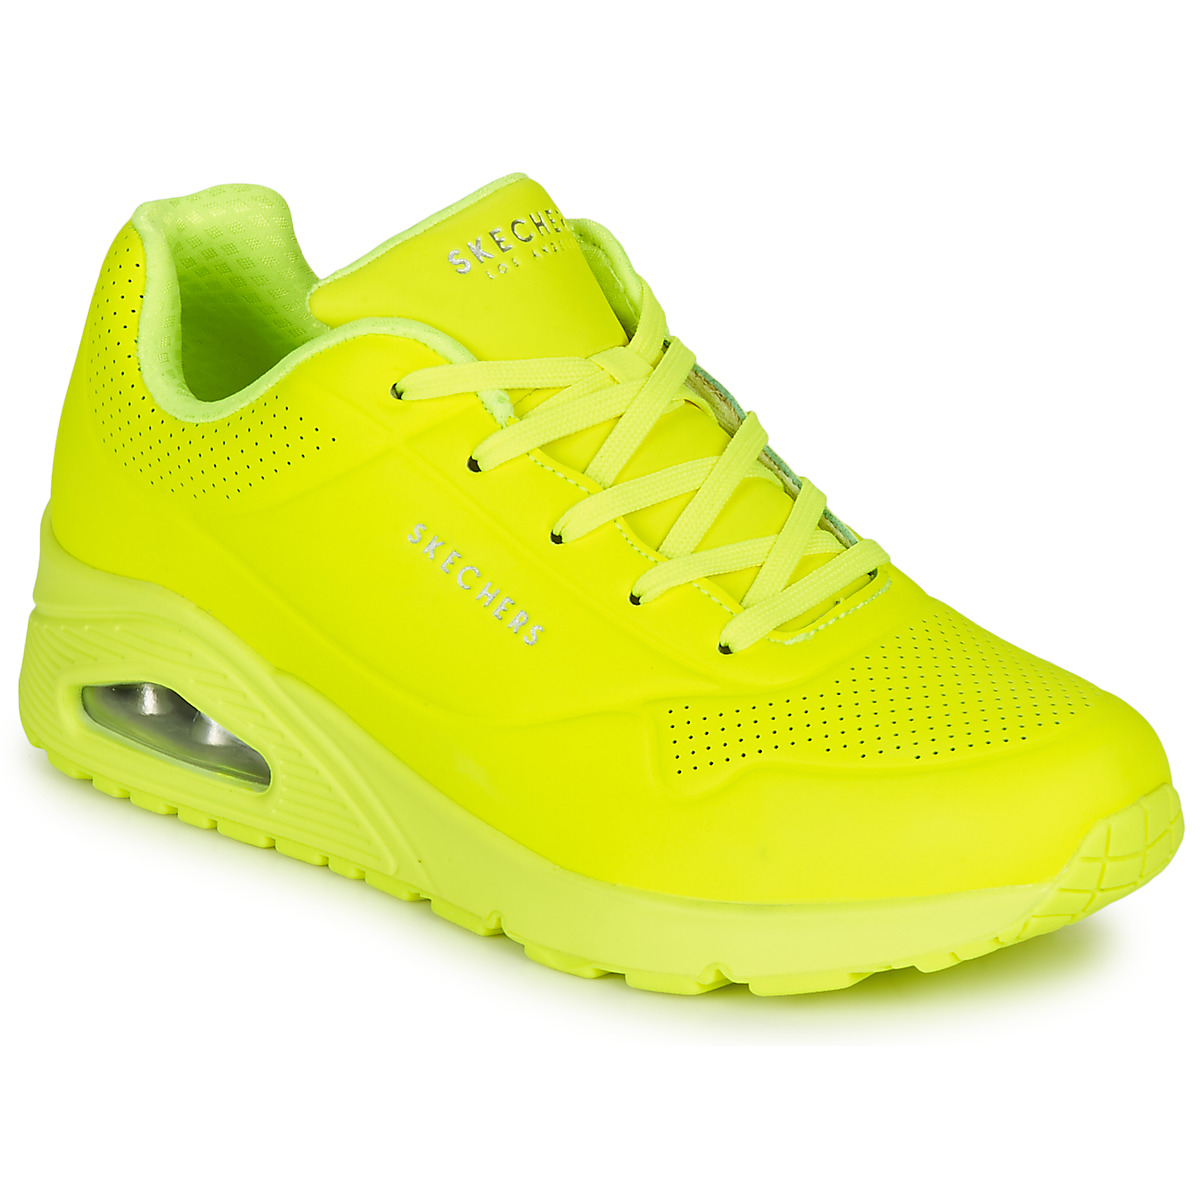 yellow skechers sneakers